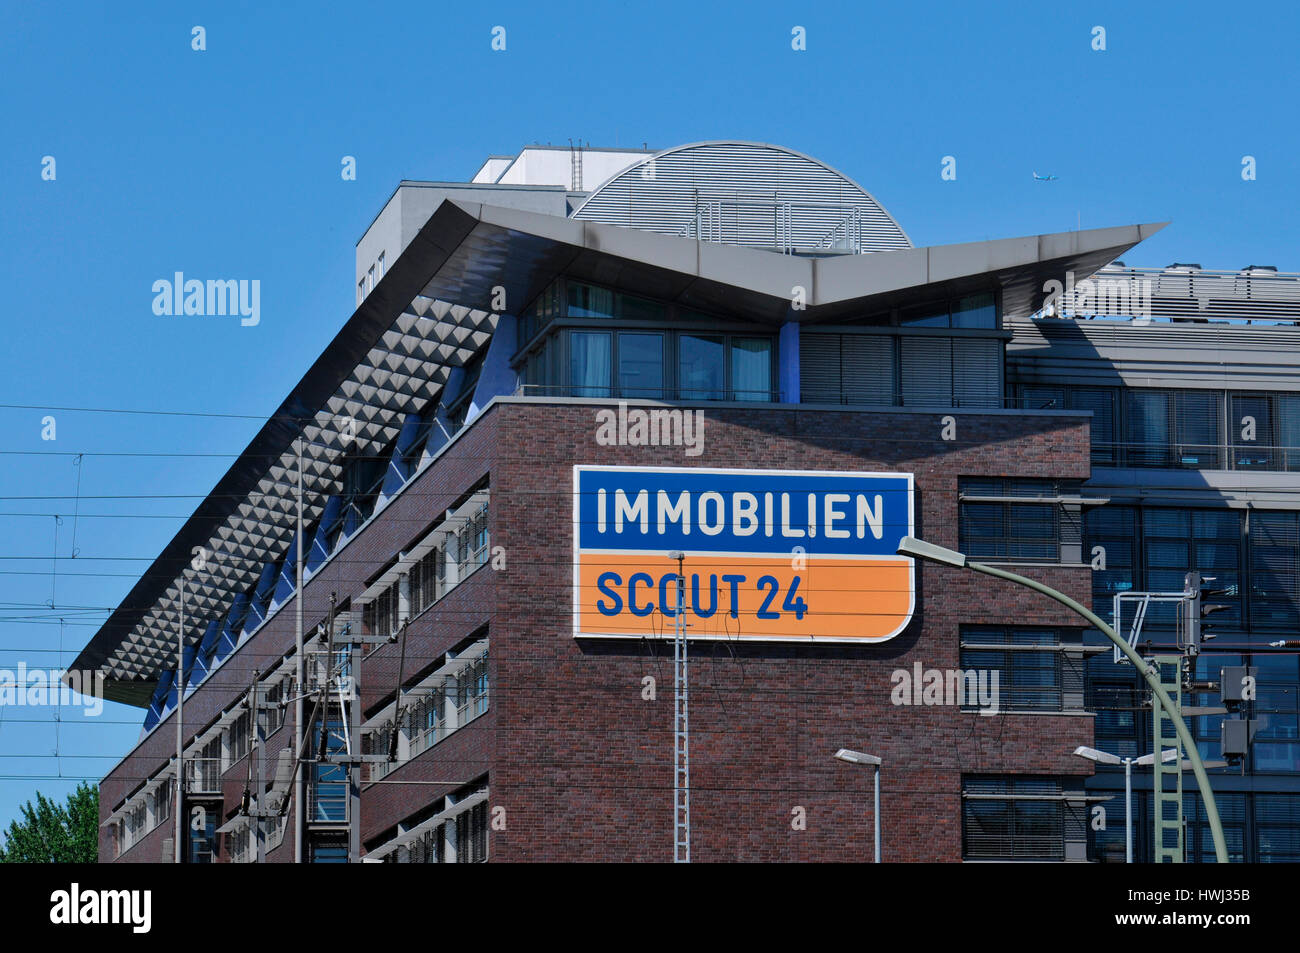 Immobilien Scout, Andreasstrasse, Friedrichshain, Berlin, Deutschland Stock Photo